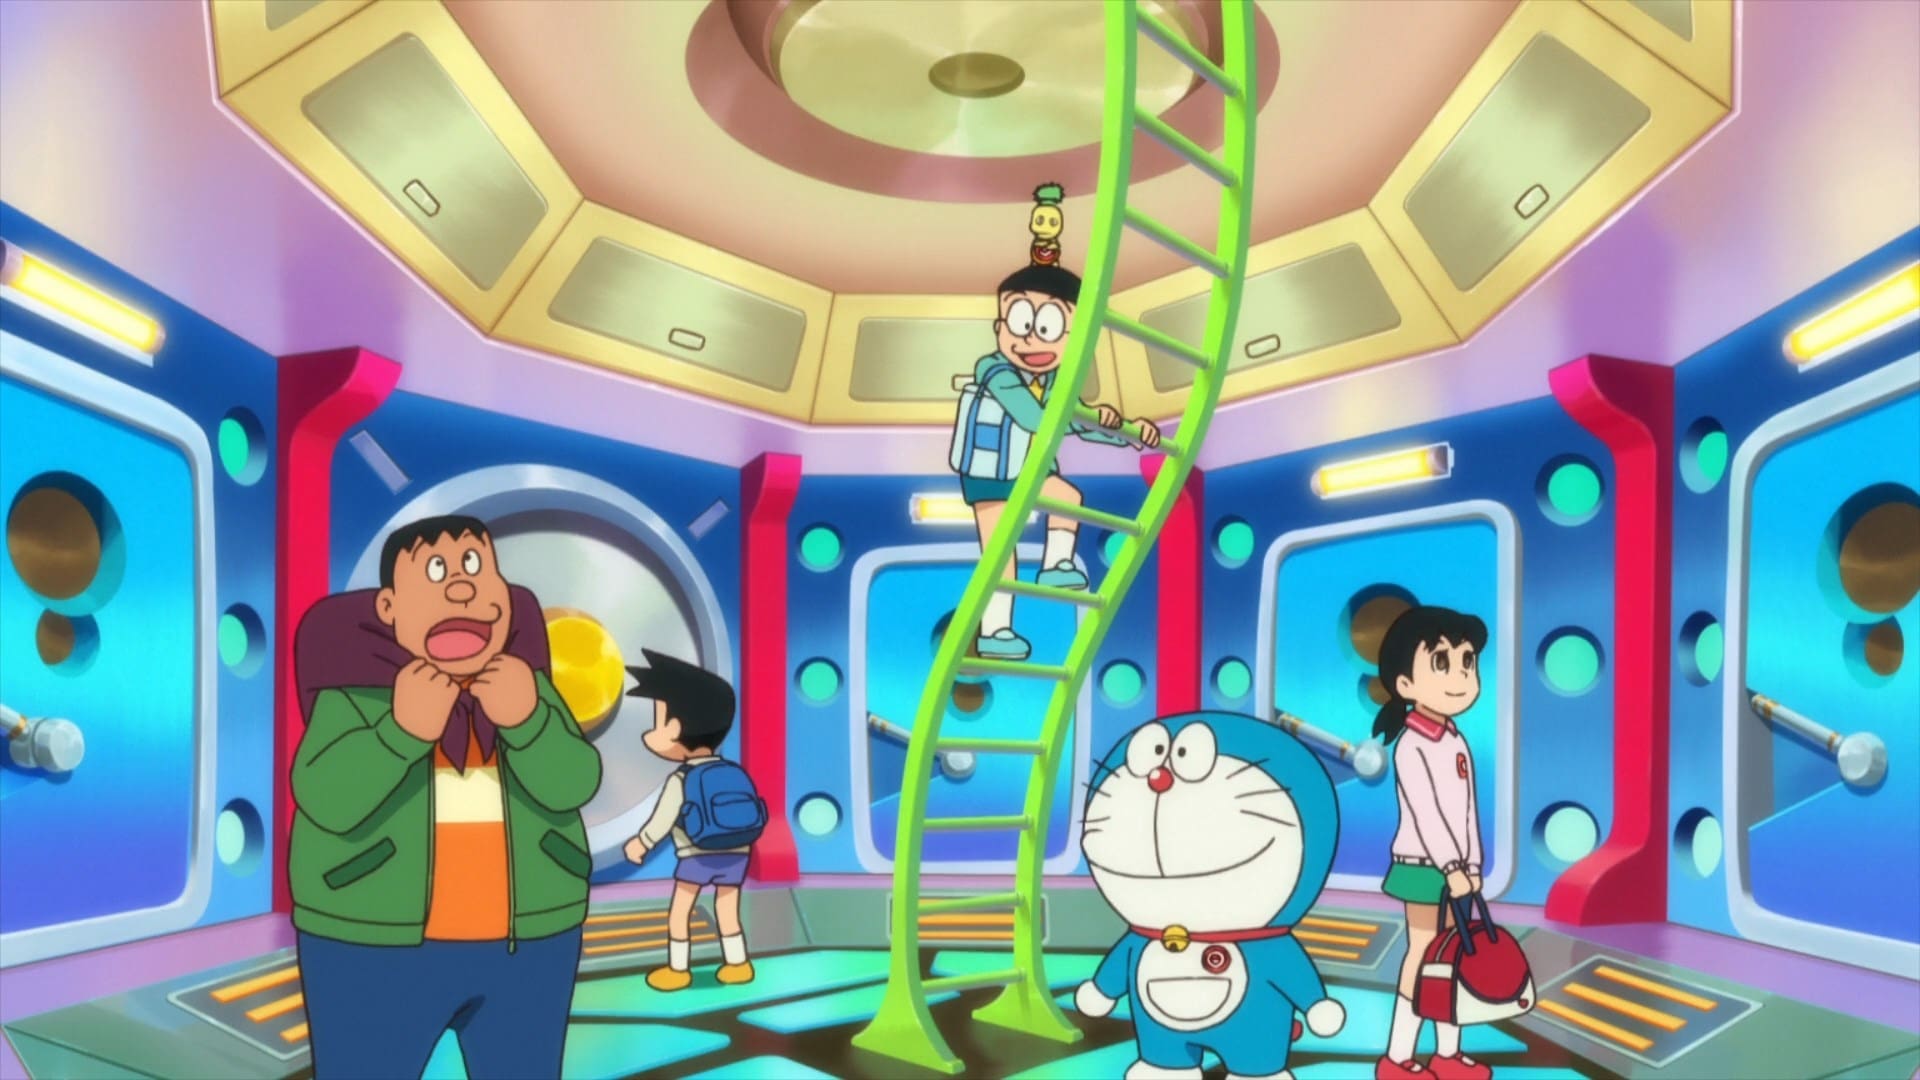 Doraemon: Nobita và Mặt Trăng Phiêu Lưu Ký (2019)